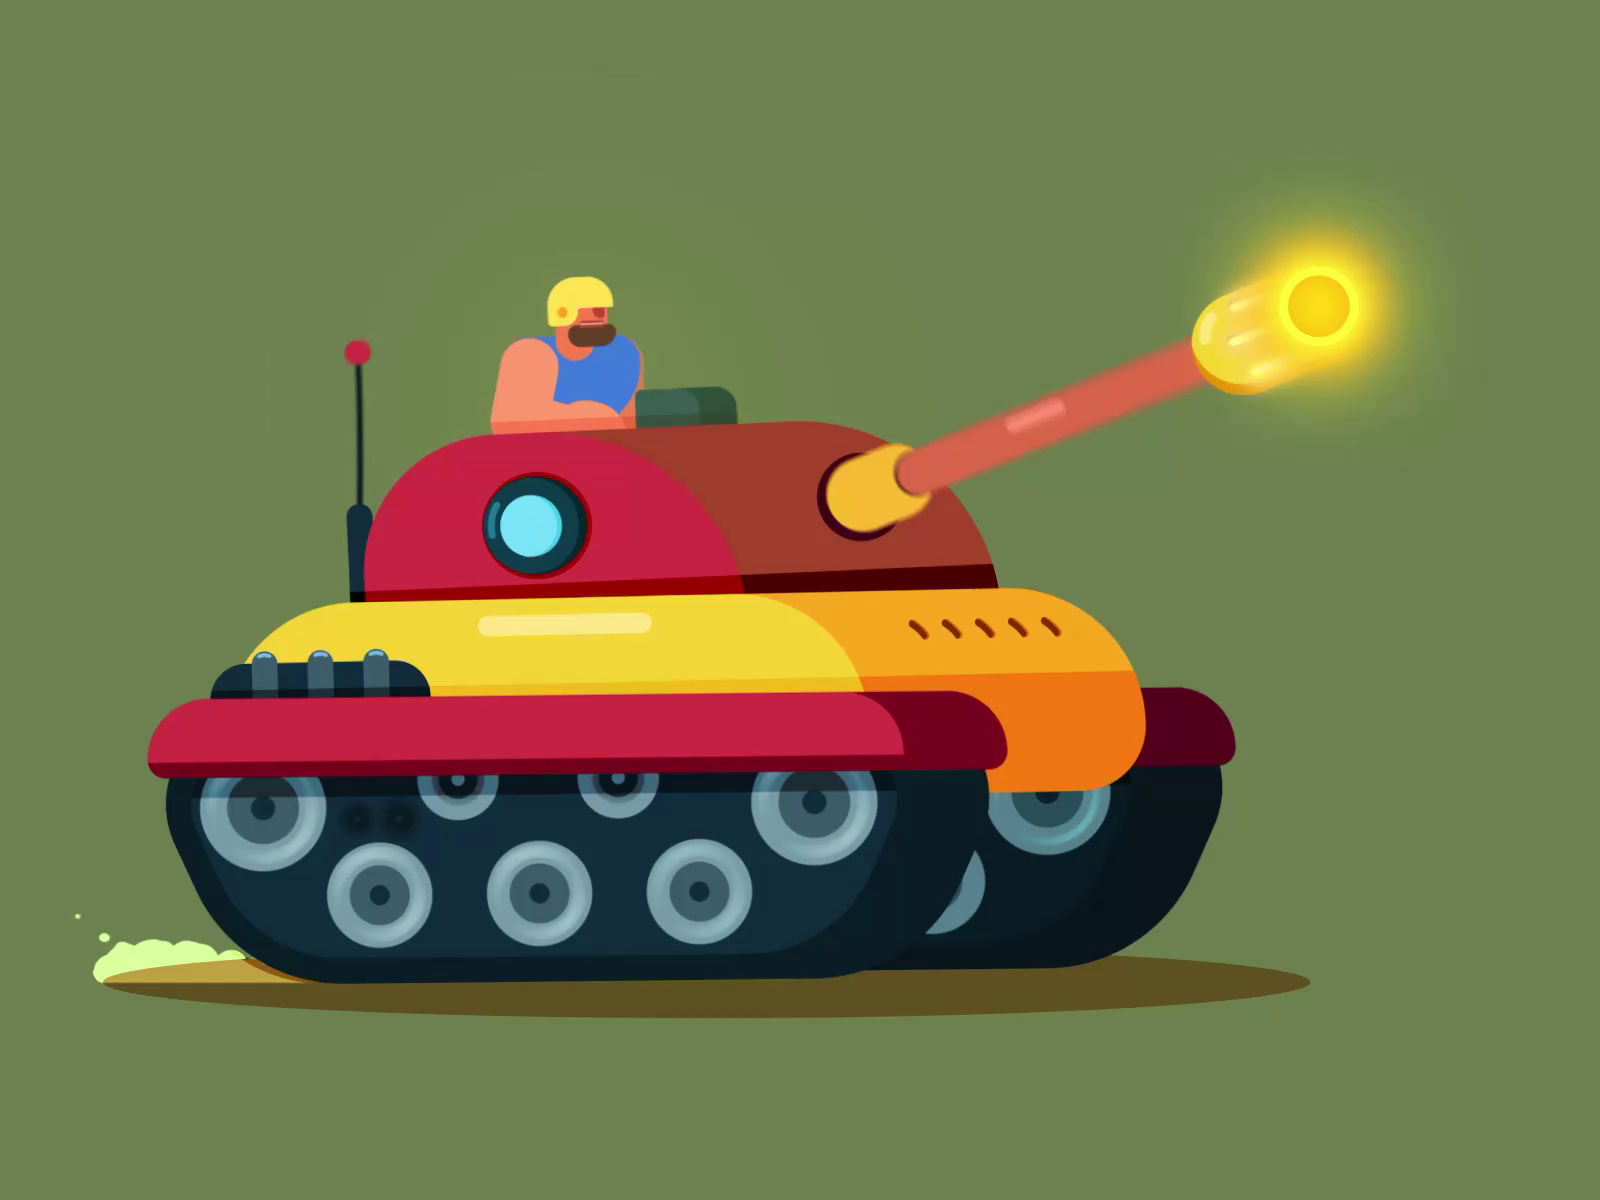 Battle Tank Animation by Purple Pie Studios on Dribbble